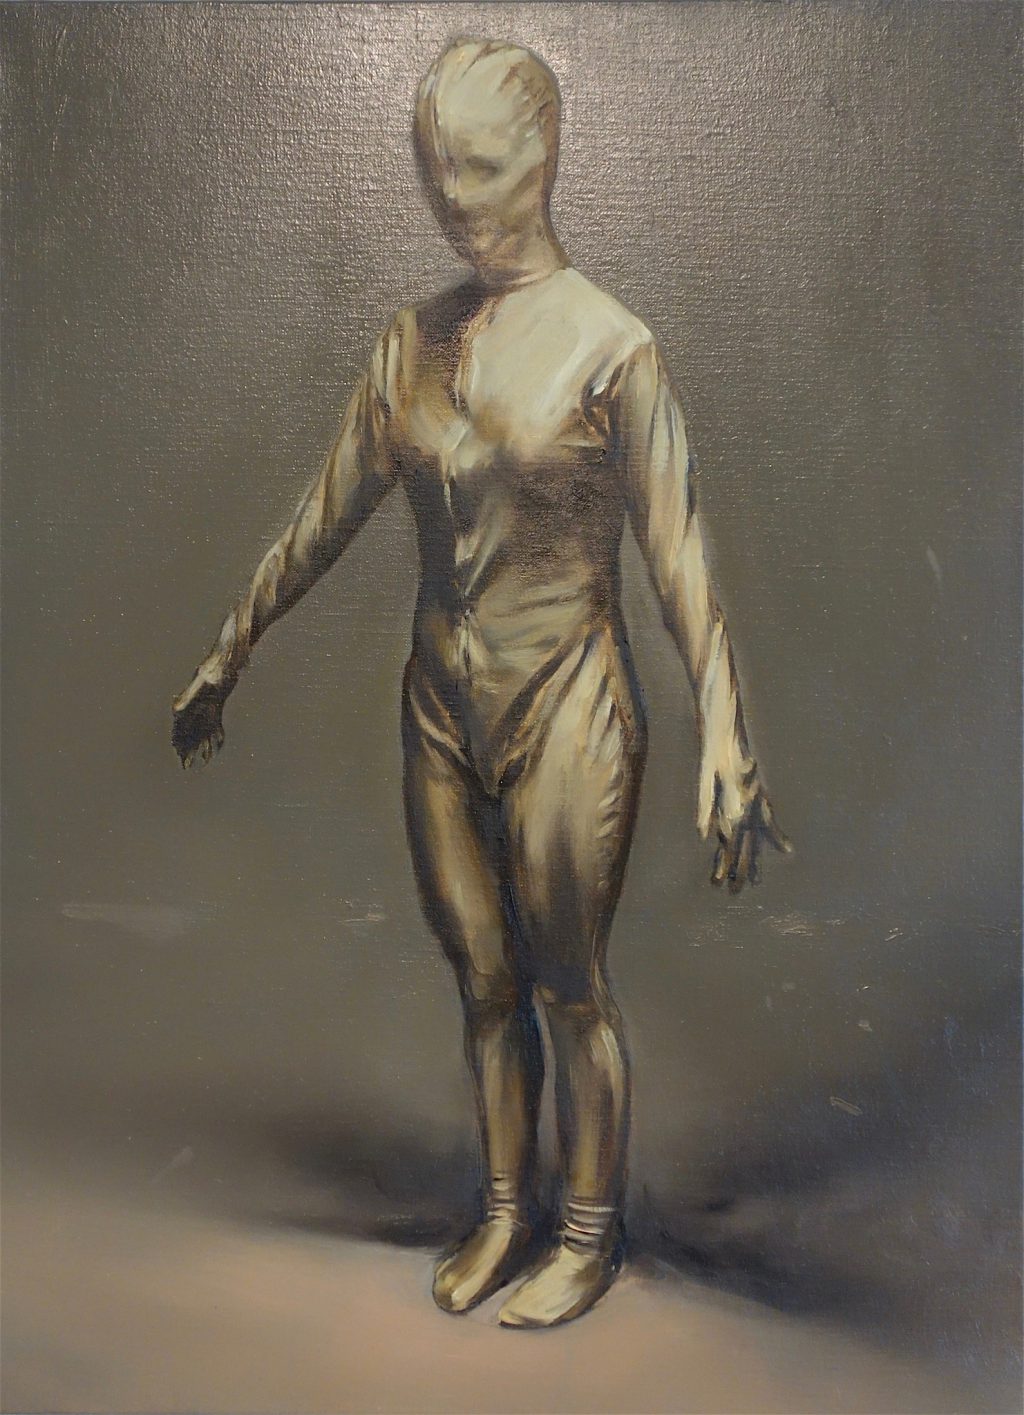 Michaël Borremans “Molly” 2018, oil on canvas